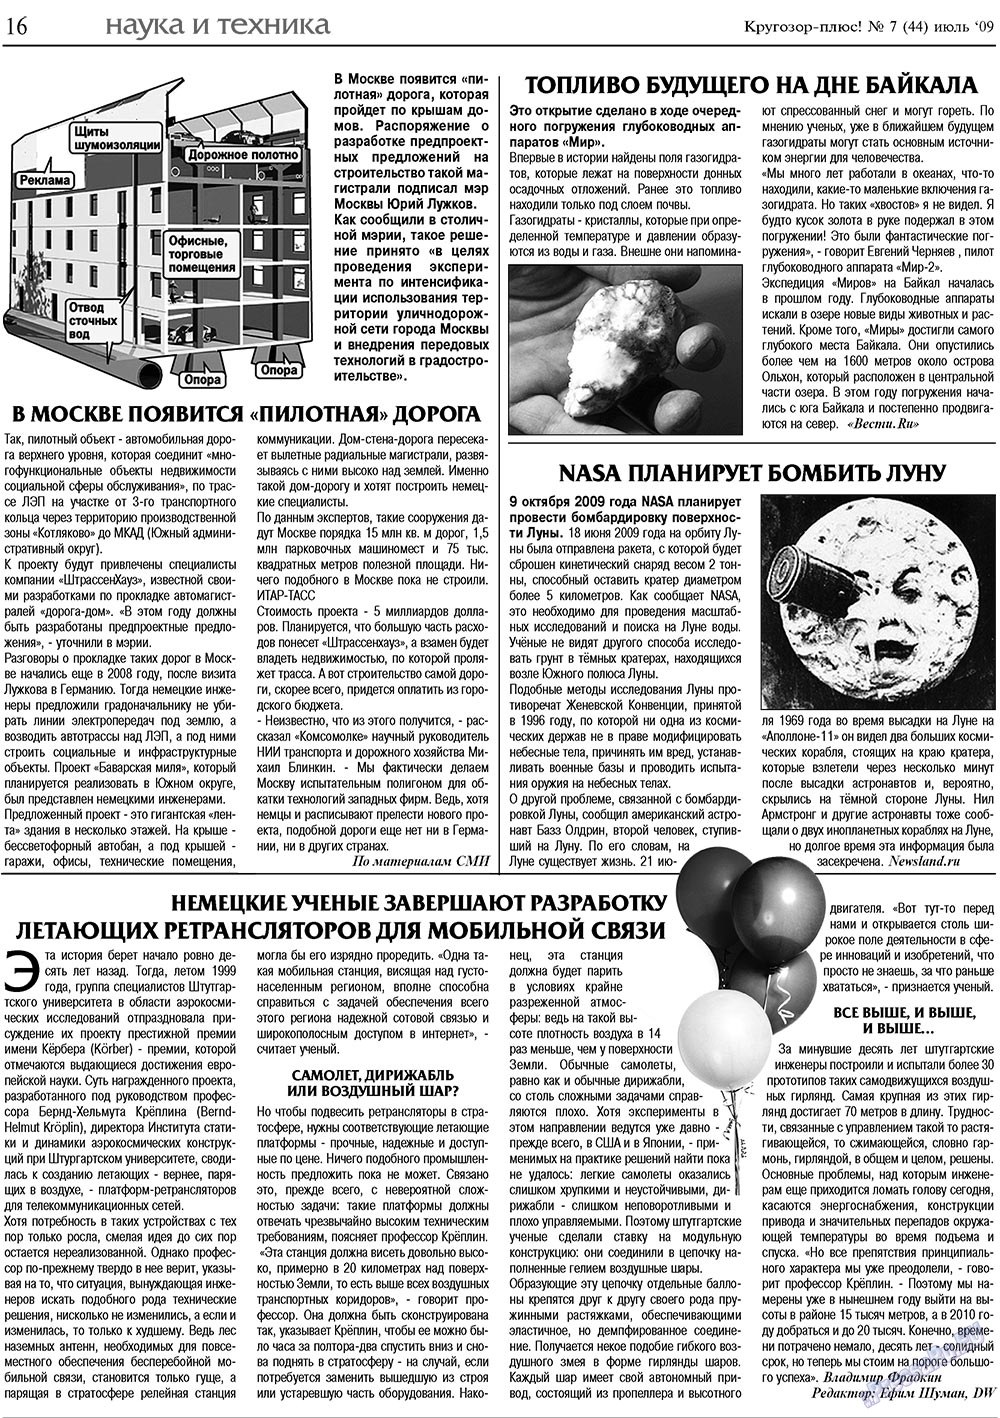 Кругозор плюс!, газета. 2009 №7 стр.16